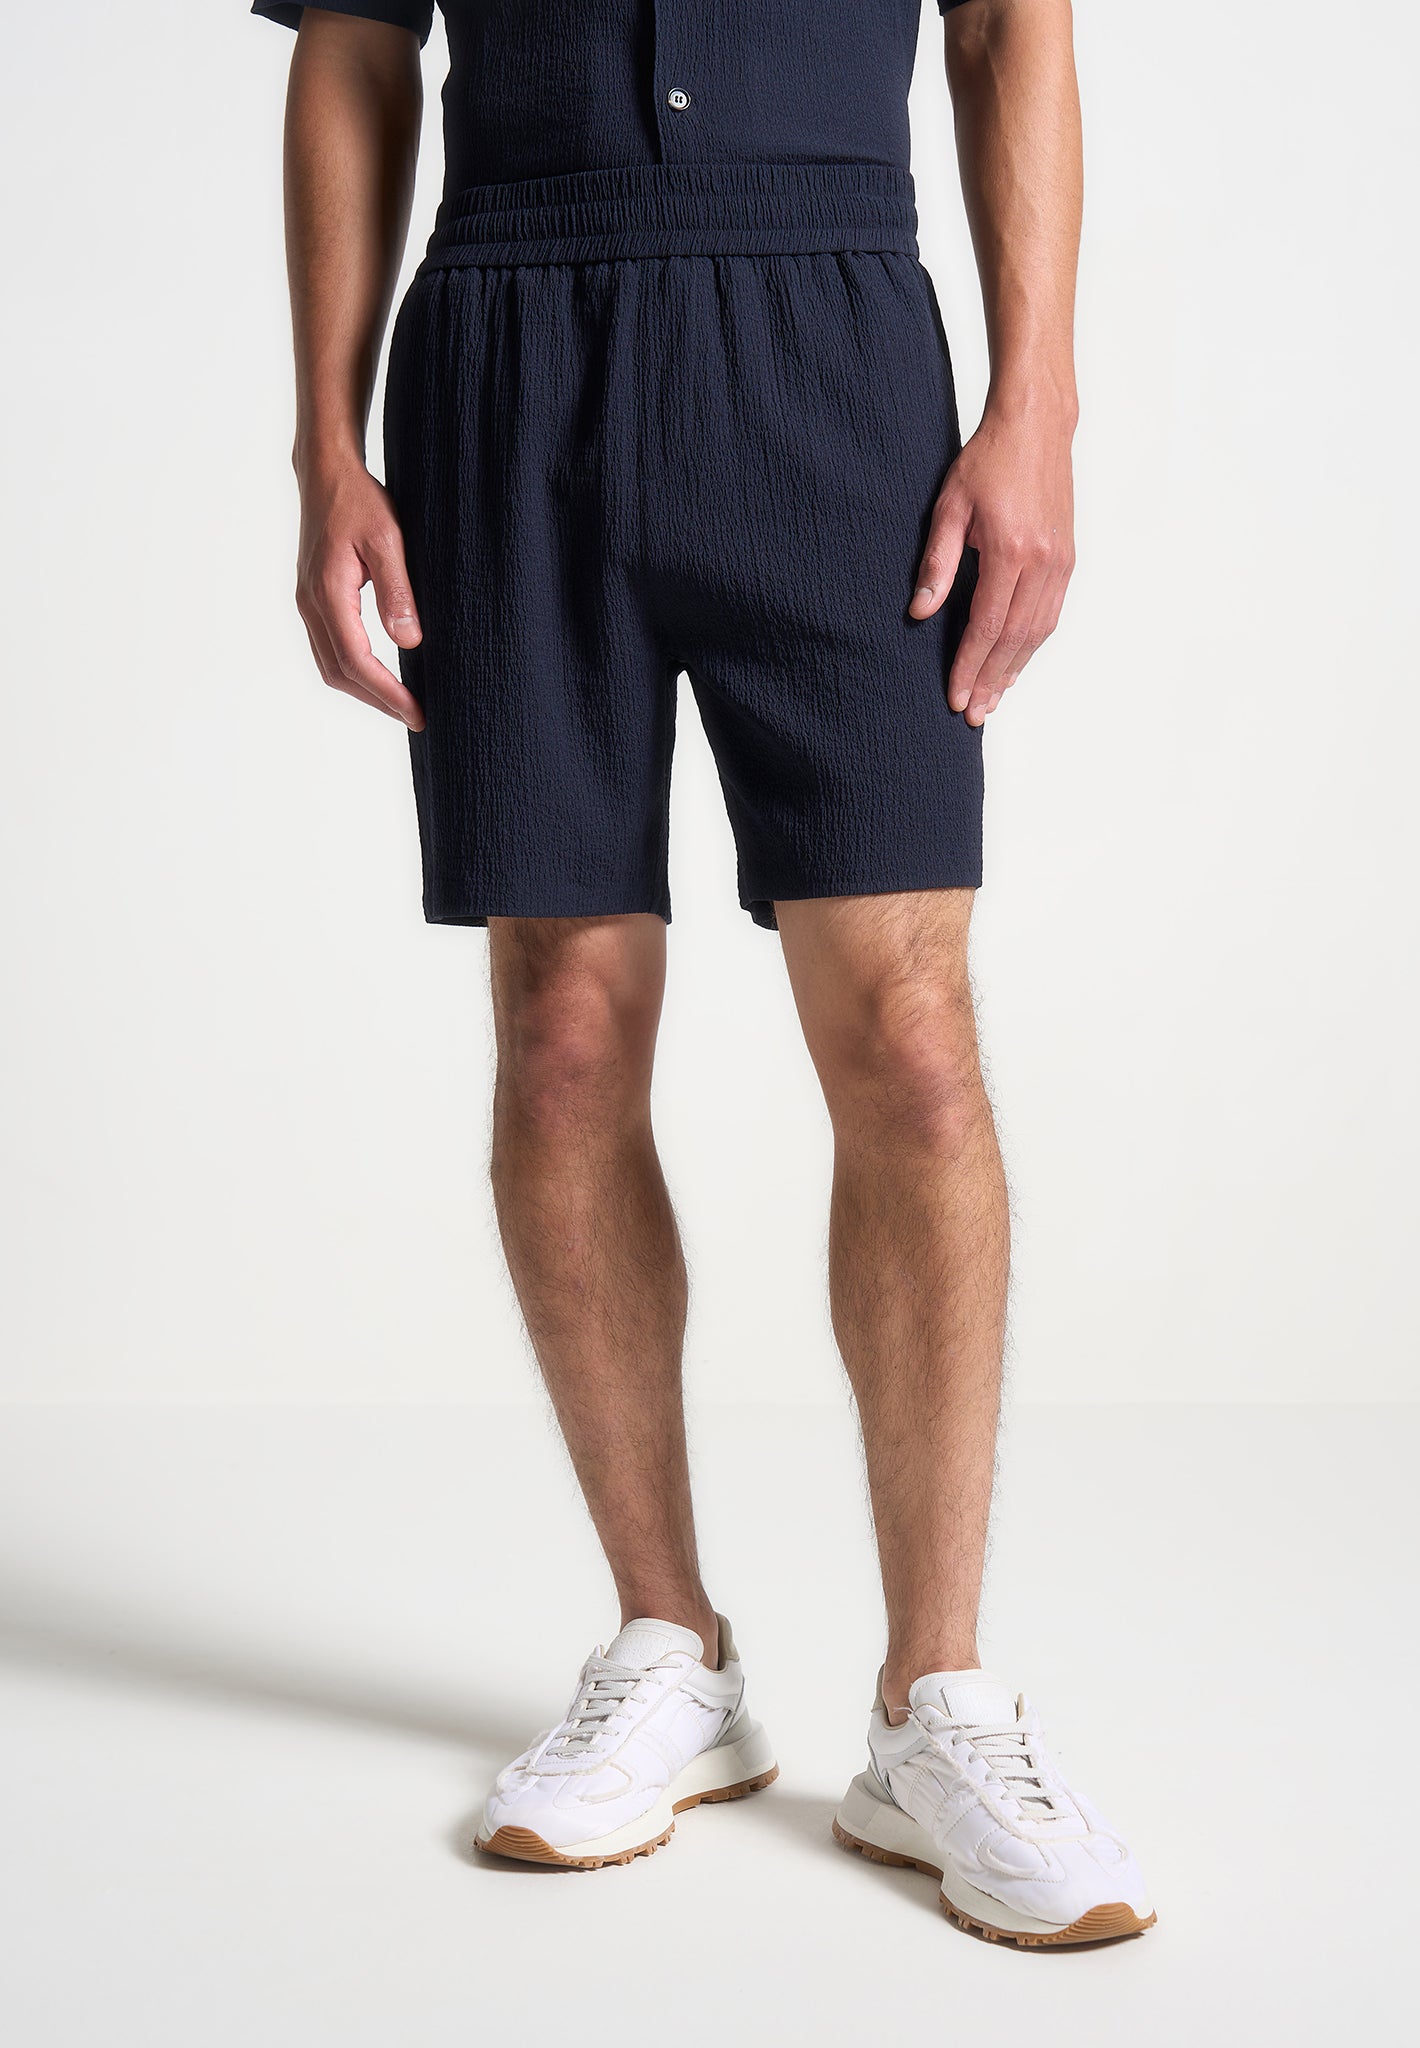 seersucker-shorts-navy